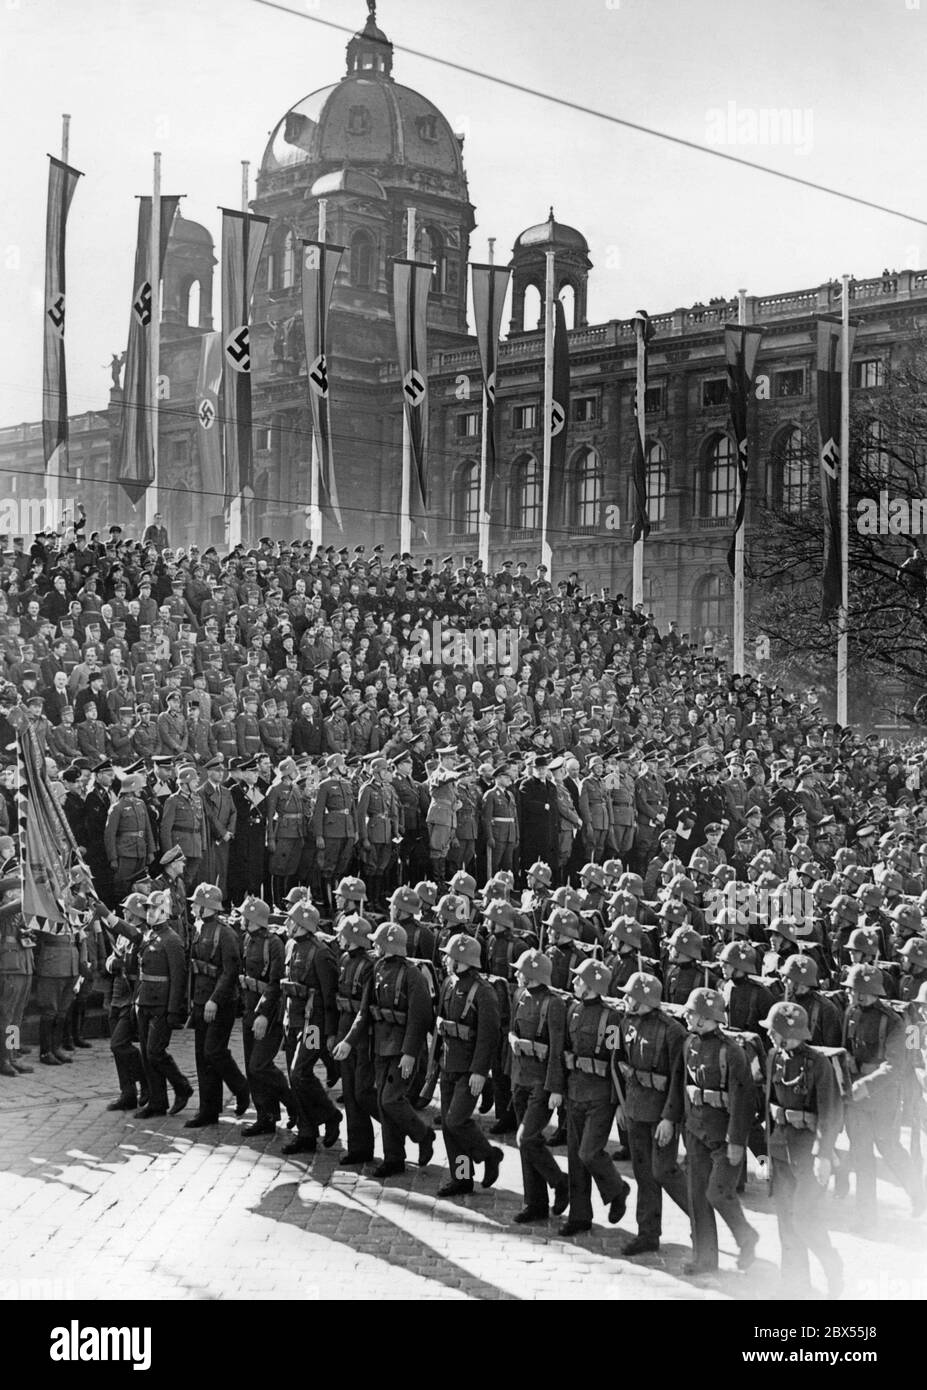 Marsch der Soldaten vor Adolf Hitler während der Militärparade auf dem Heldenplatz in Wien. Die Parade findet im Rahmen der Feierlichkeiten zur Annexion Österreichs an das Deutsche Reich statt. Die österreichischen Soldaten tragen bereits das deutsche Staatswappen auf ihren Stahlhelmen und Uniformen. Stockfoto